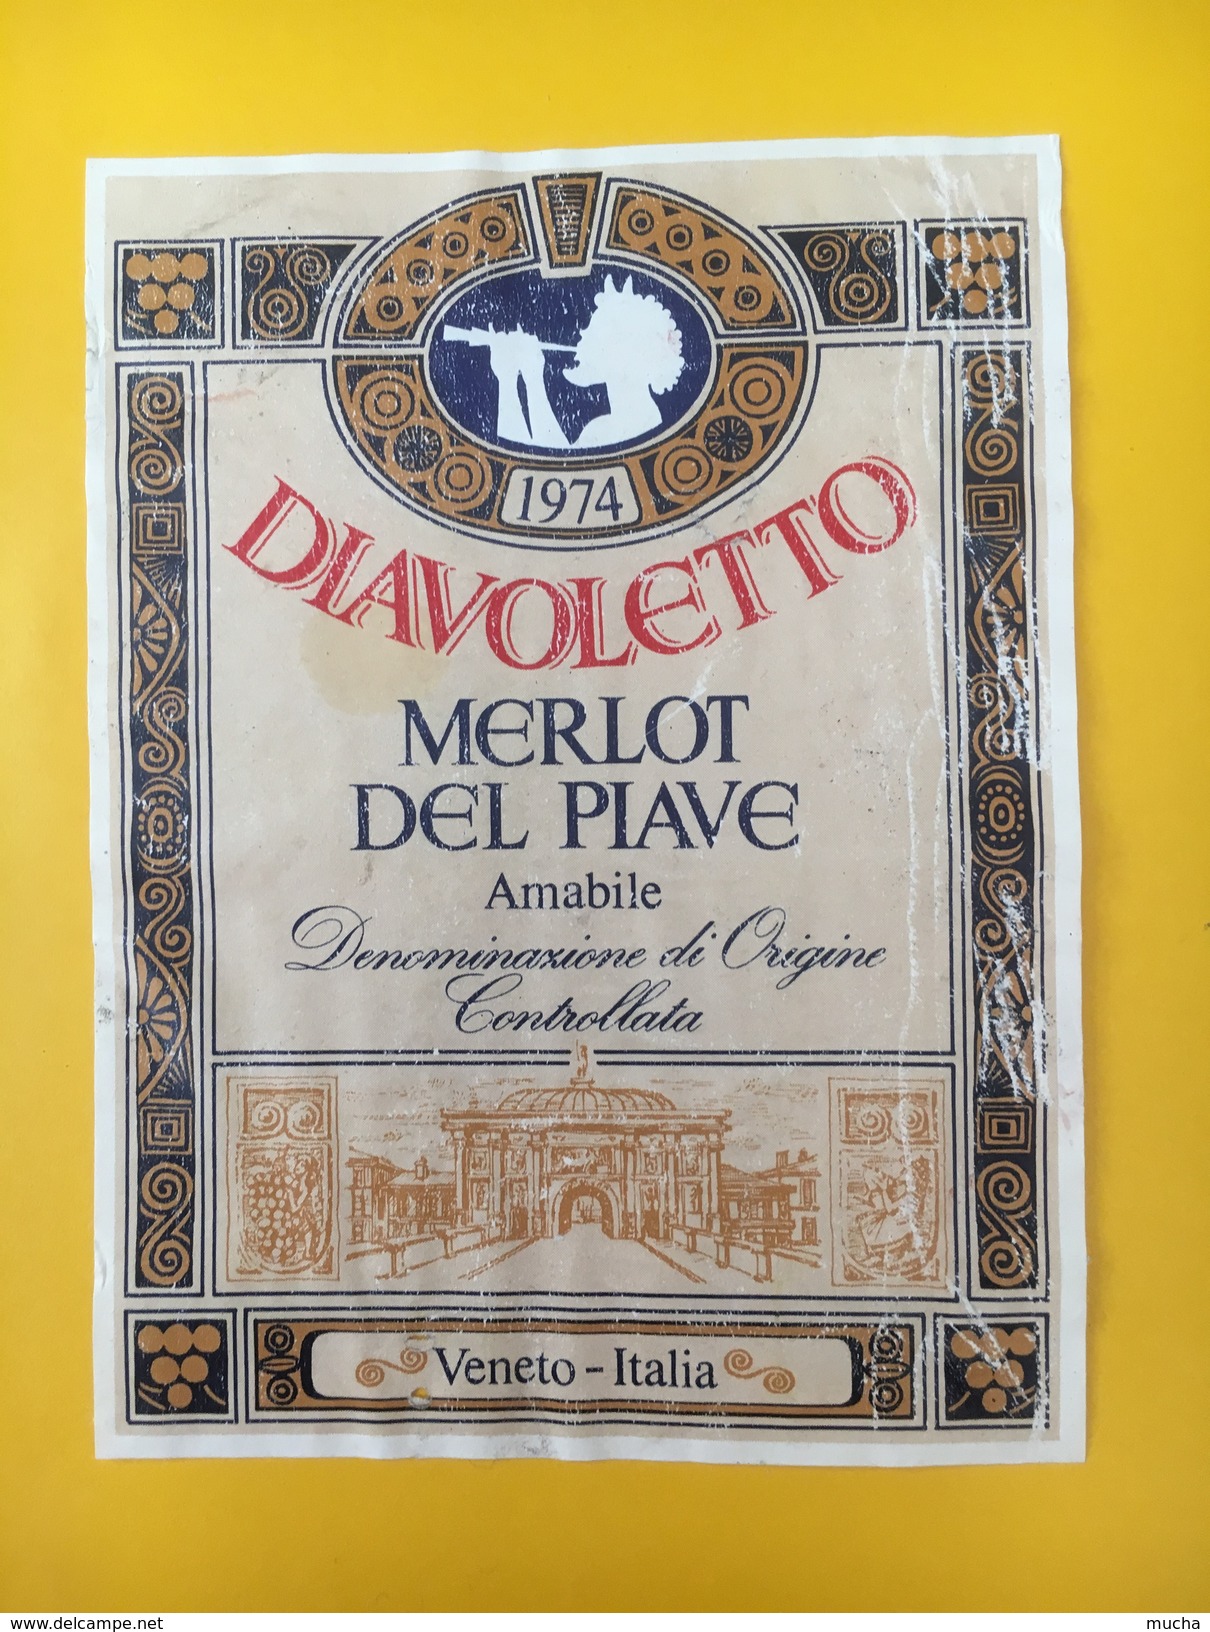 4056 -  Diavoletto 1974 Merlot Del Piave Amabile Italie - Musik